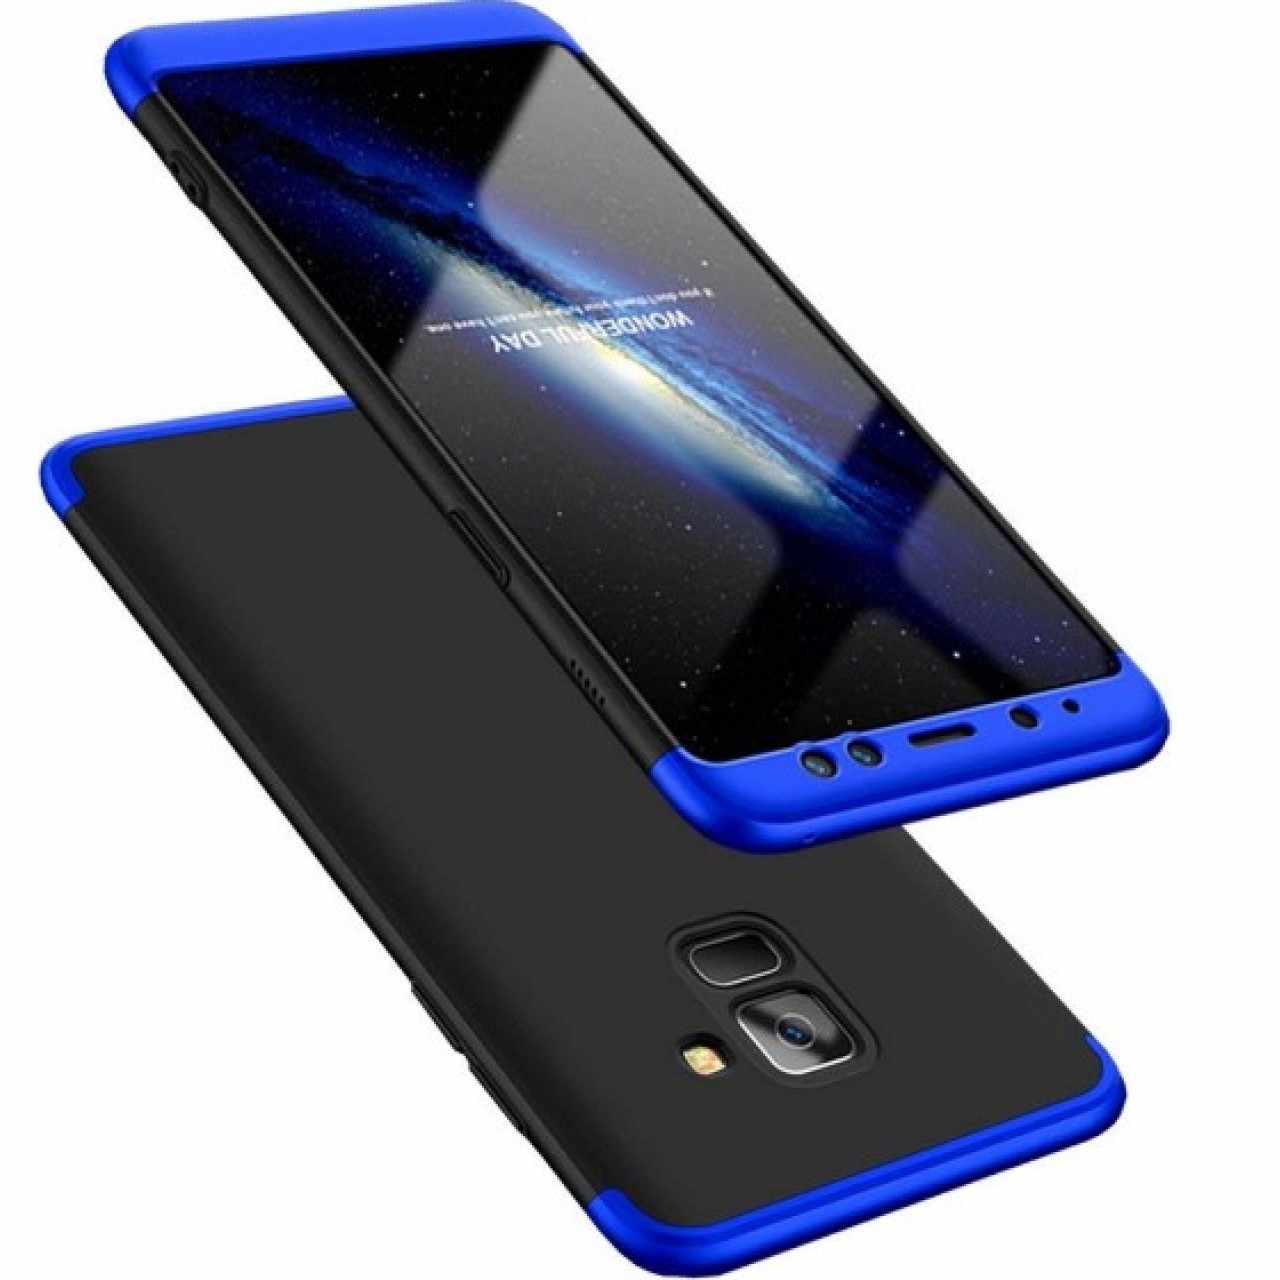 Θήκη Samsung Galaxy A8 2018 A530 Full Body GKK 360° Σκληρή Πλαστική - 4641 - Μαύρο Μπλε - ΟΕΜ